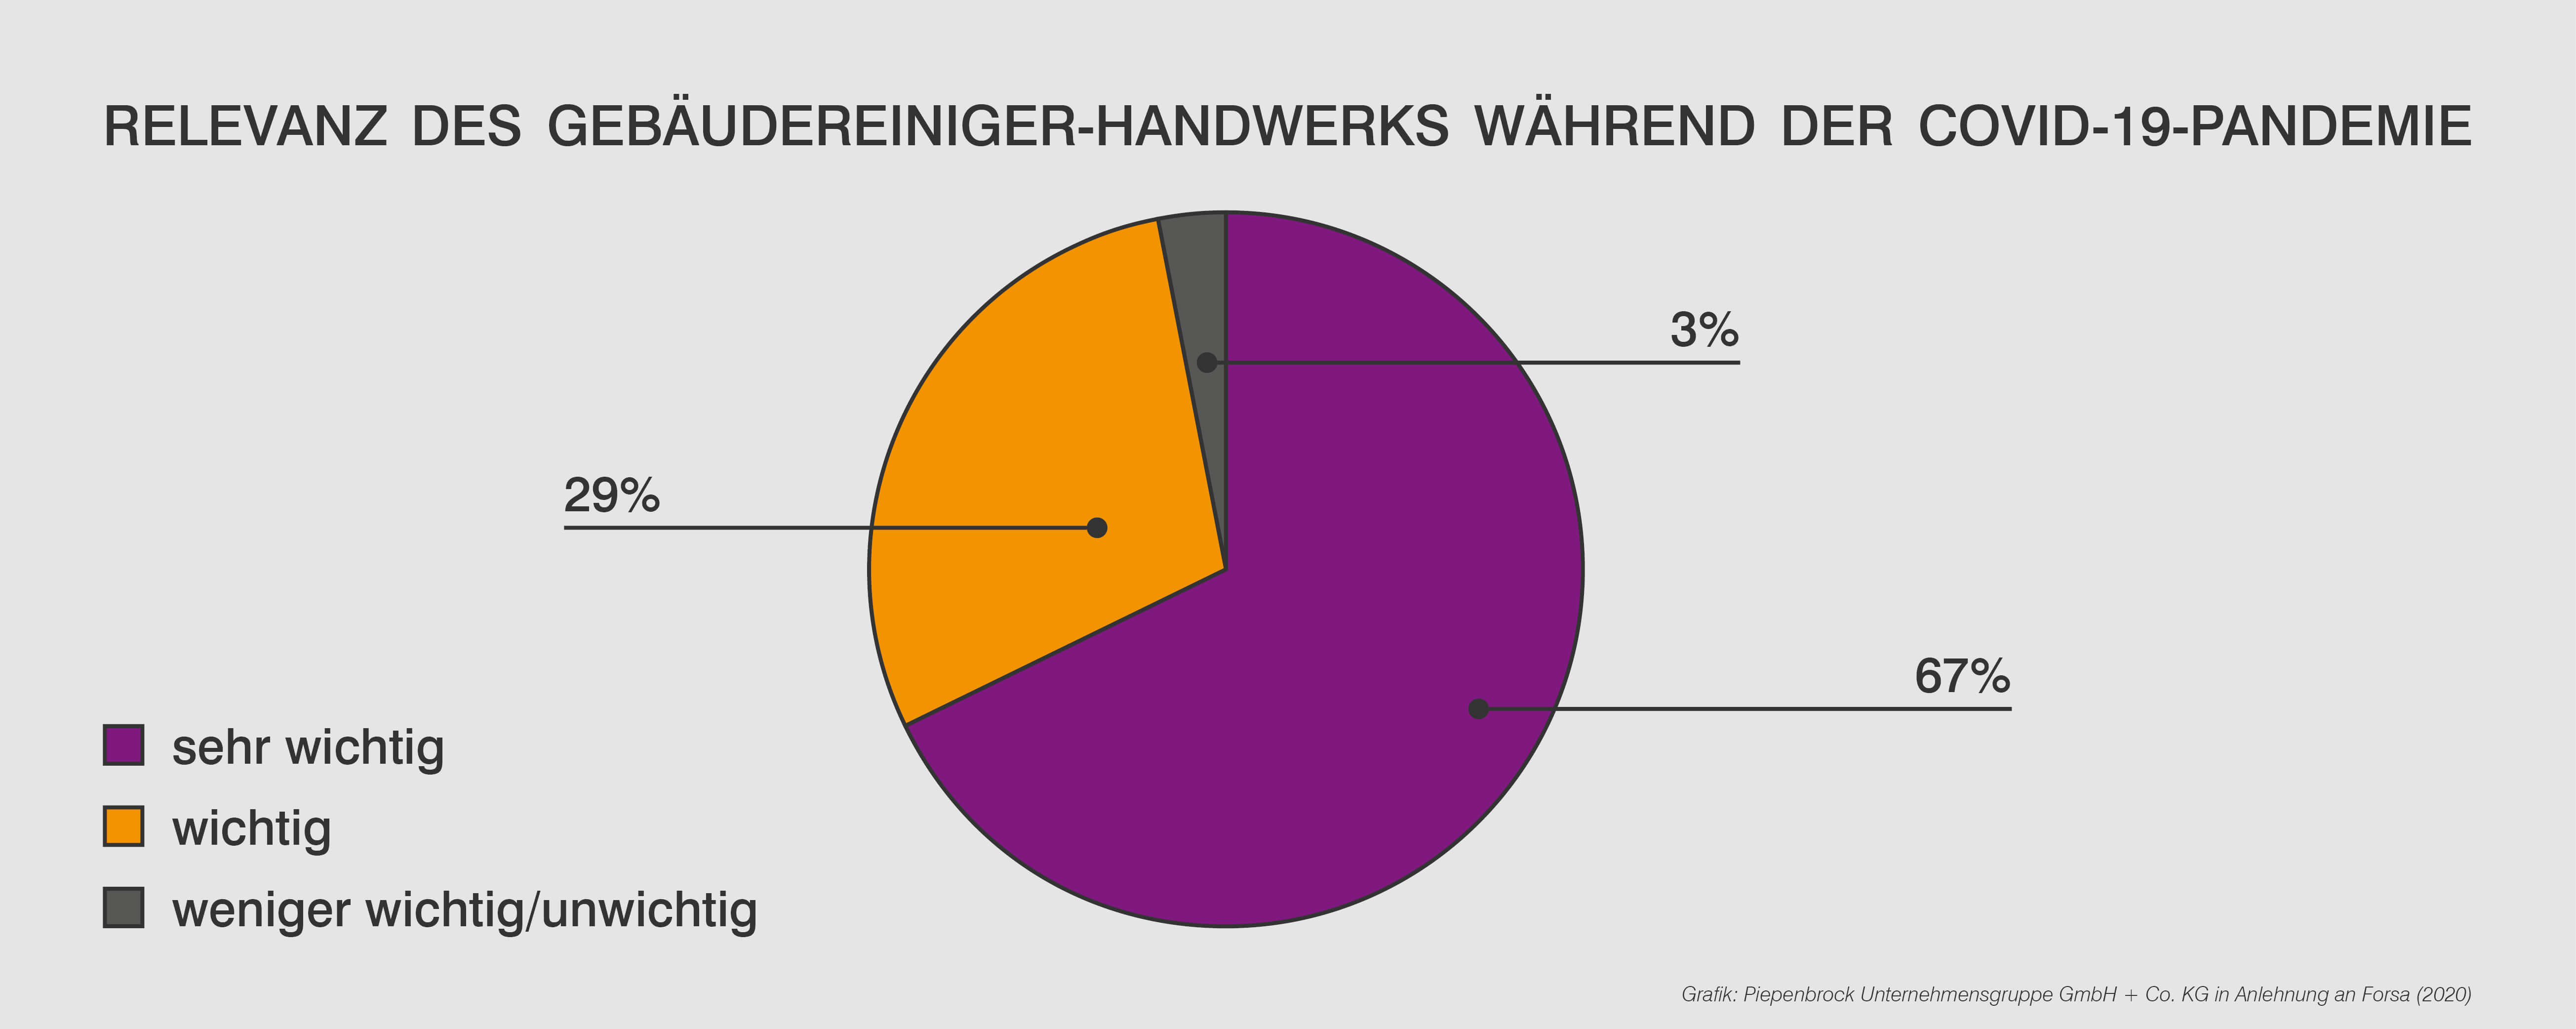 96% der Befragten halten die Gebäudereinigung in der Corona-Krise für wichtig (Grafik: Piepenbrock Unternehmensgruppe GmbH + Co. KG in Anlehnung an forsa (2020))